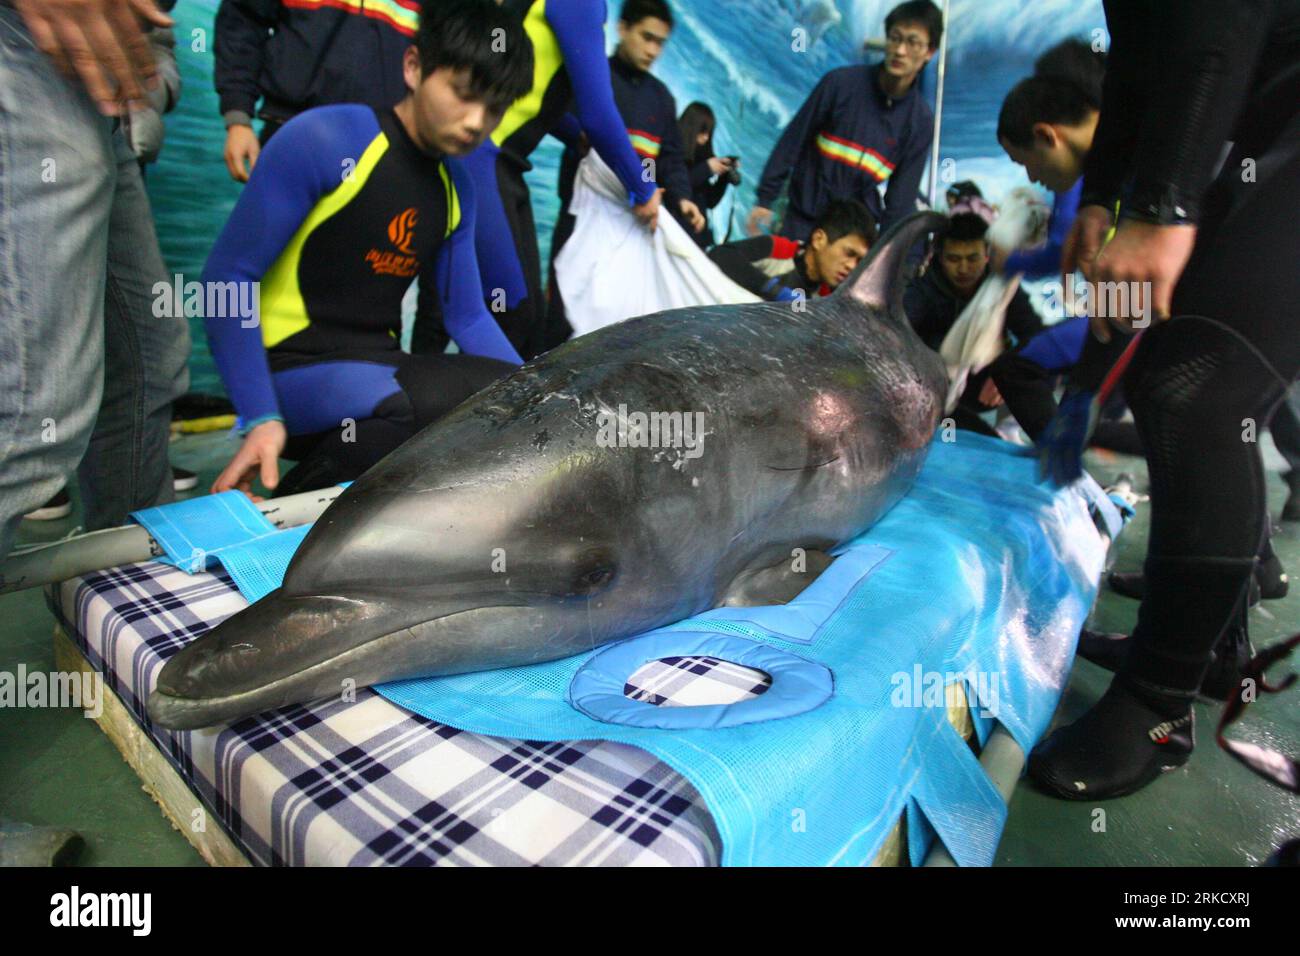 Bildnummer: 54825687 Datum: 17.01.2011 Copyright: Imago/Xinhua (110117) -- NINGBO, 17 de enero de 2011 (Xinhua) -- Los miembros del personal del acuario Ningbo Ocean World miden un delfín recién llegado en Ningbo, provincia de Zhejiang del este de China, 17 de enero de 2011. Tres delfines fueron transportados aquí desde Japón el lunes, y se instalarían en Ningbo Ocean World. Cada uno de los delfines, de 2,2 a 2,5 metros de longitud, pesa más de 200 kilogramos. (Xinhua/Zhang Peijian) (hdt) CHINA-JAPÓN-DOLPHIN-TRANSPORT-ARRIVAL (CN) PUBLICATIONxNOTxINxCHN Gesellschaft Tiere Fotostory Transport Delfin Tiertransport kbdig xub 201 Foto de stock